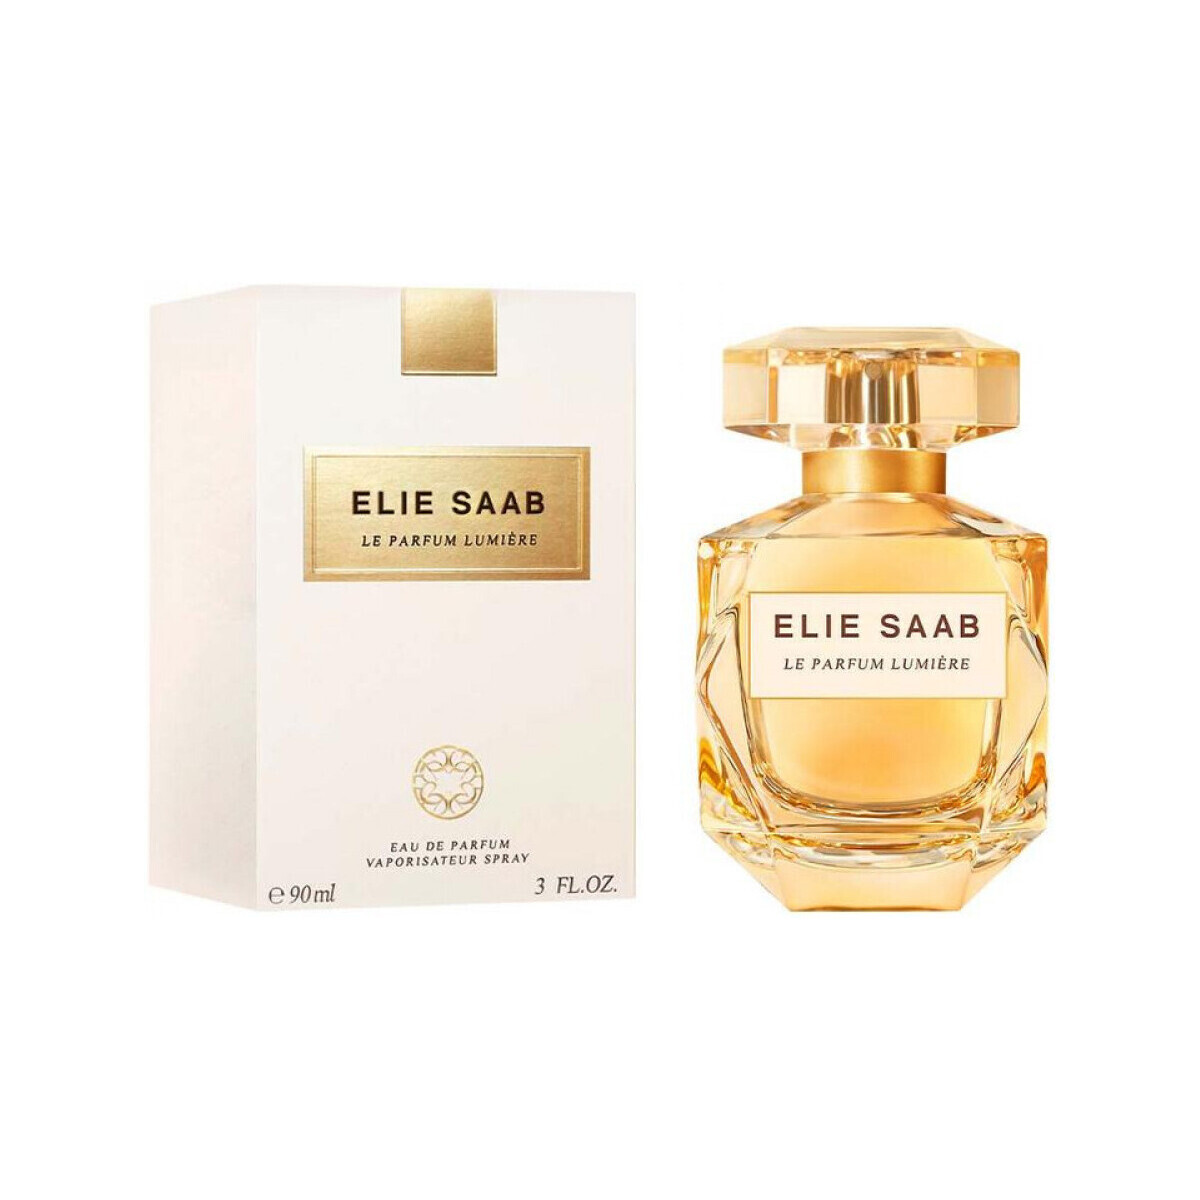 Belleza Mujer Perfume Elie Saab Le Parfum Lumière - Eau de Parfum - 90ml - Vaporizador Le perfume Lumière - perfume - 90ml - spray